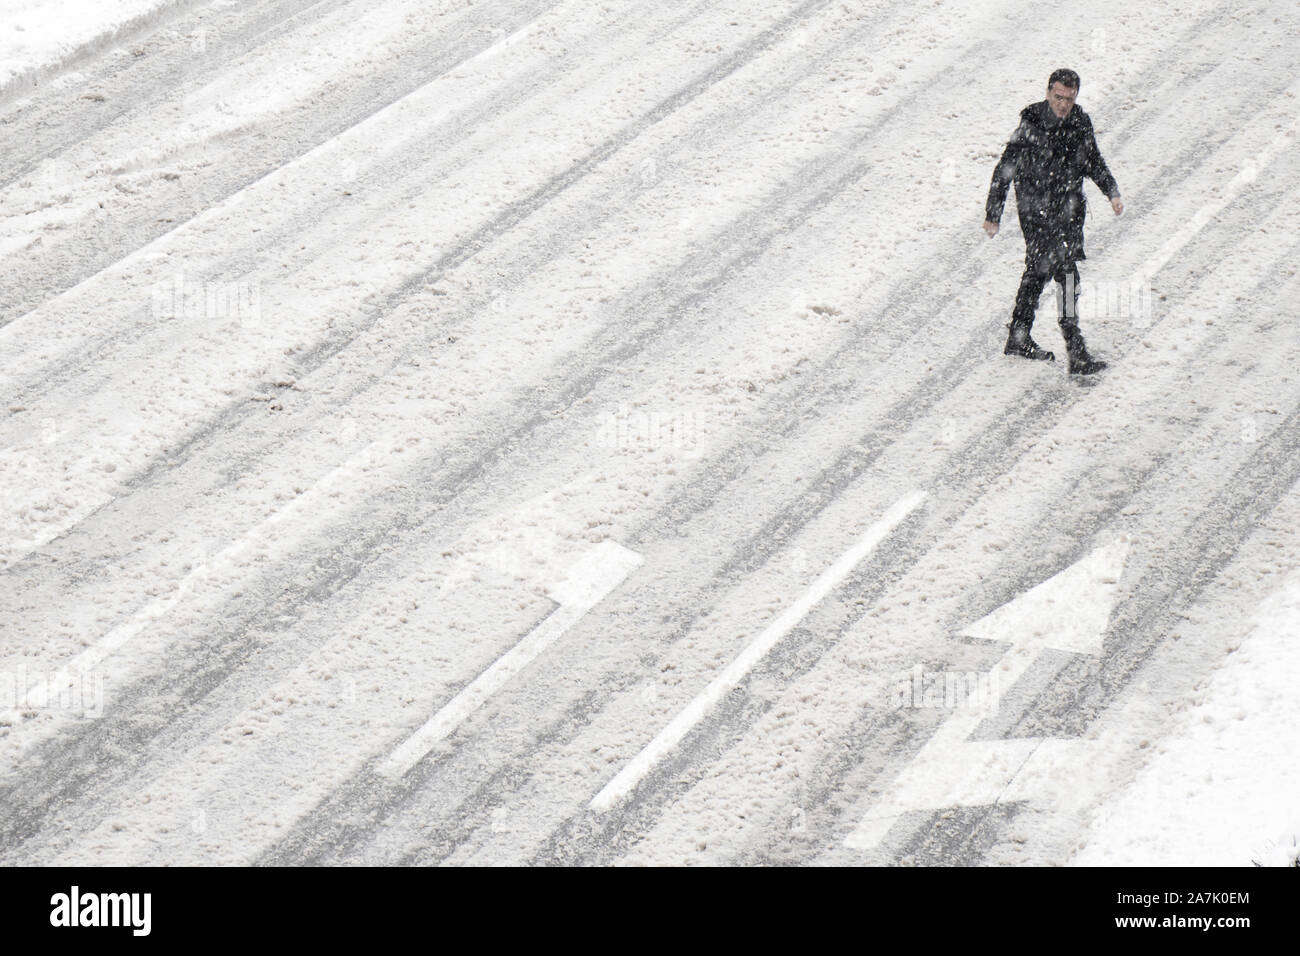 Belgrado, Serbia- 26 Gennaio 2019: Un uomo attraversare la strada al di fuori del crosswalk durante la tempesta di neve e di una vettura di pilotaggio, ad alto angolo di visione Foto Stock